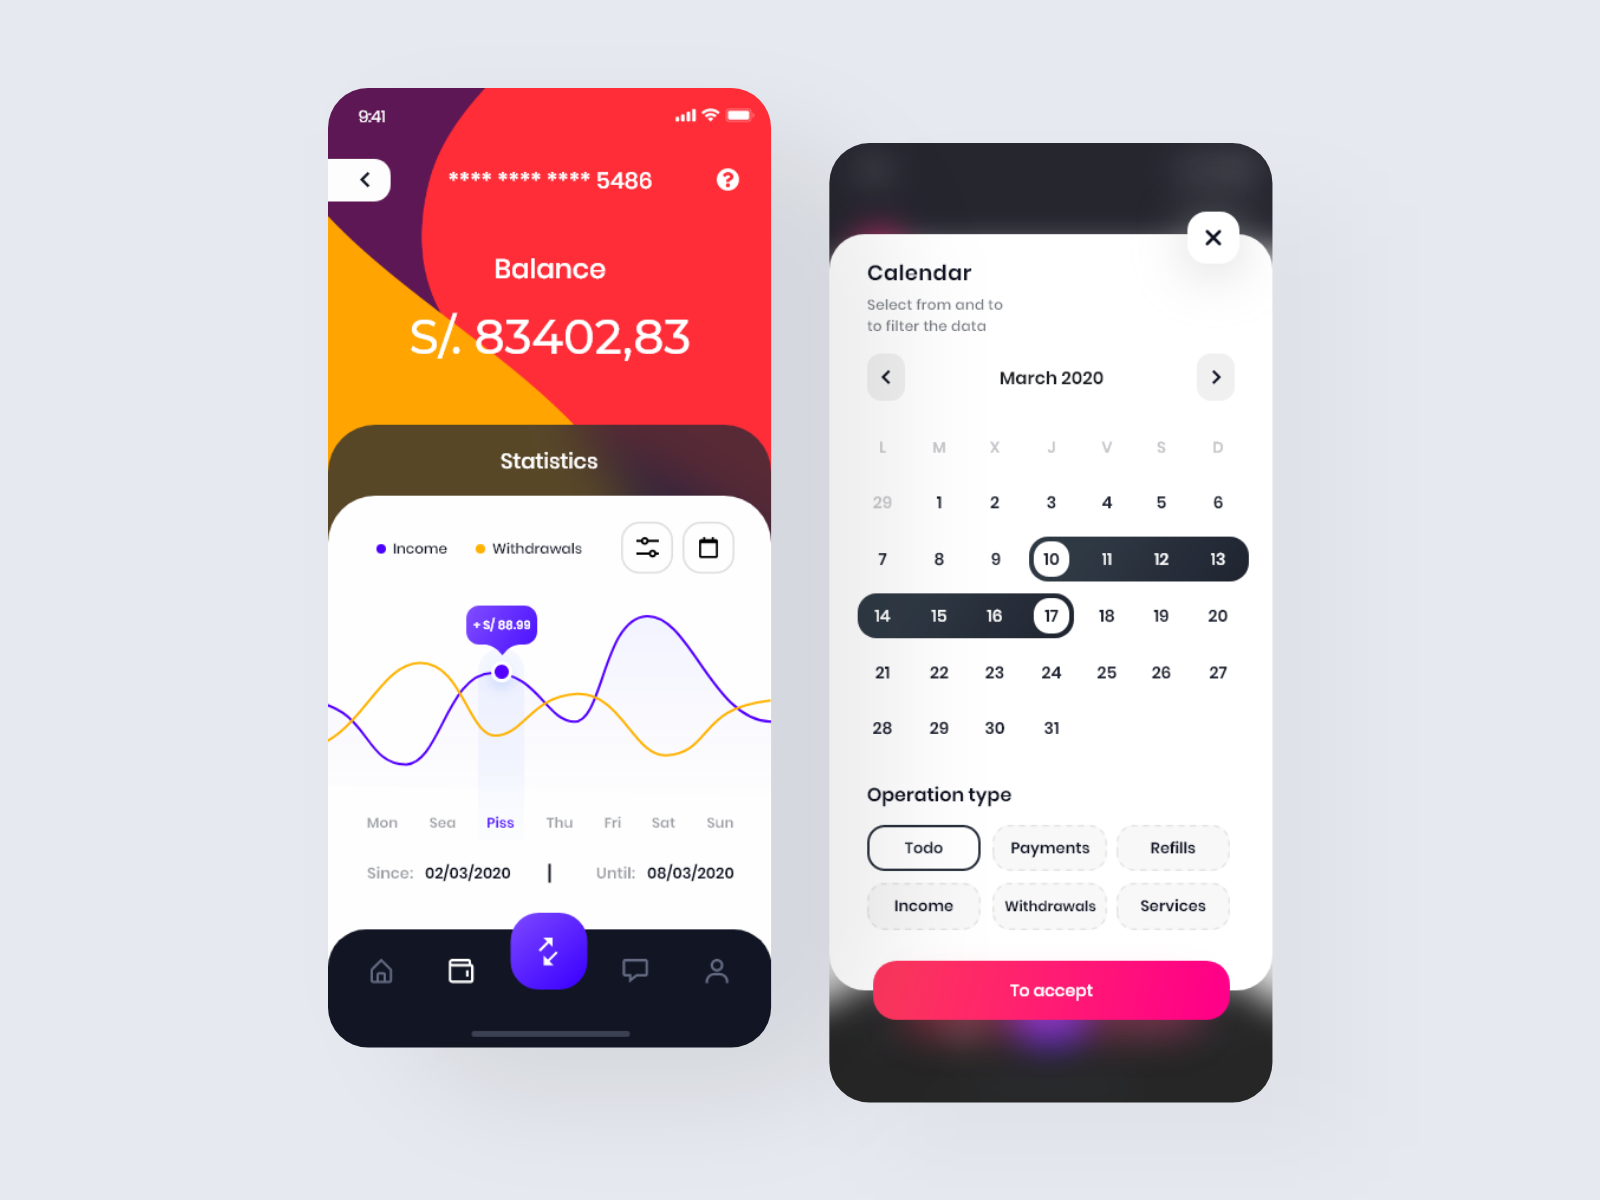 iuPayme Wallet App 💳